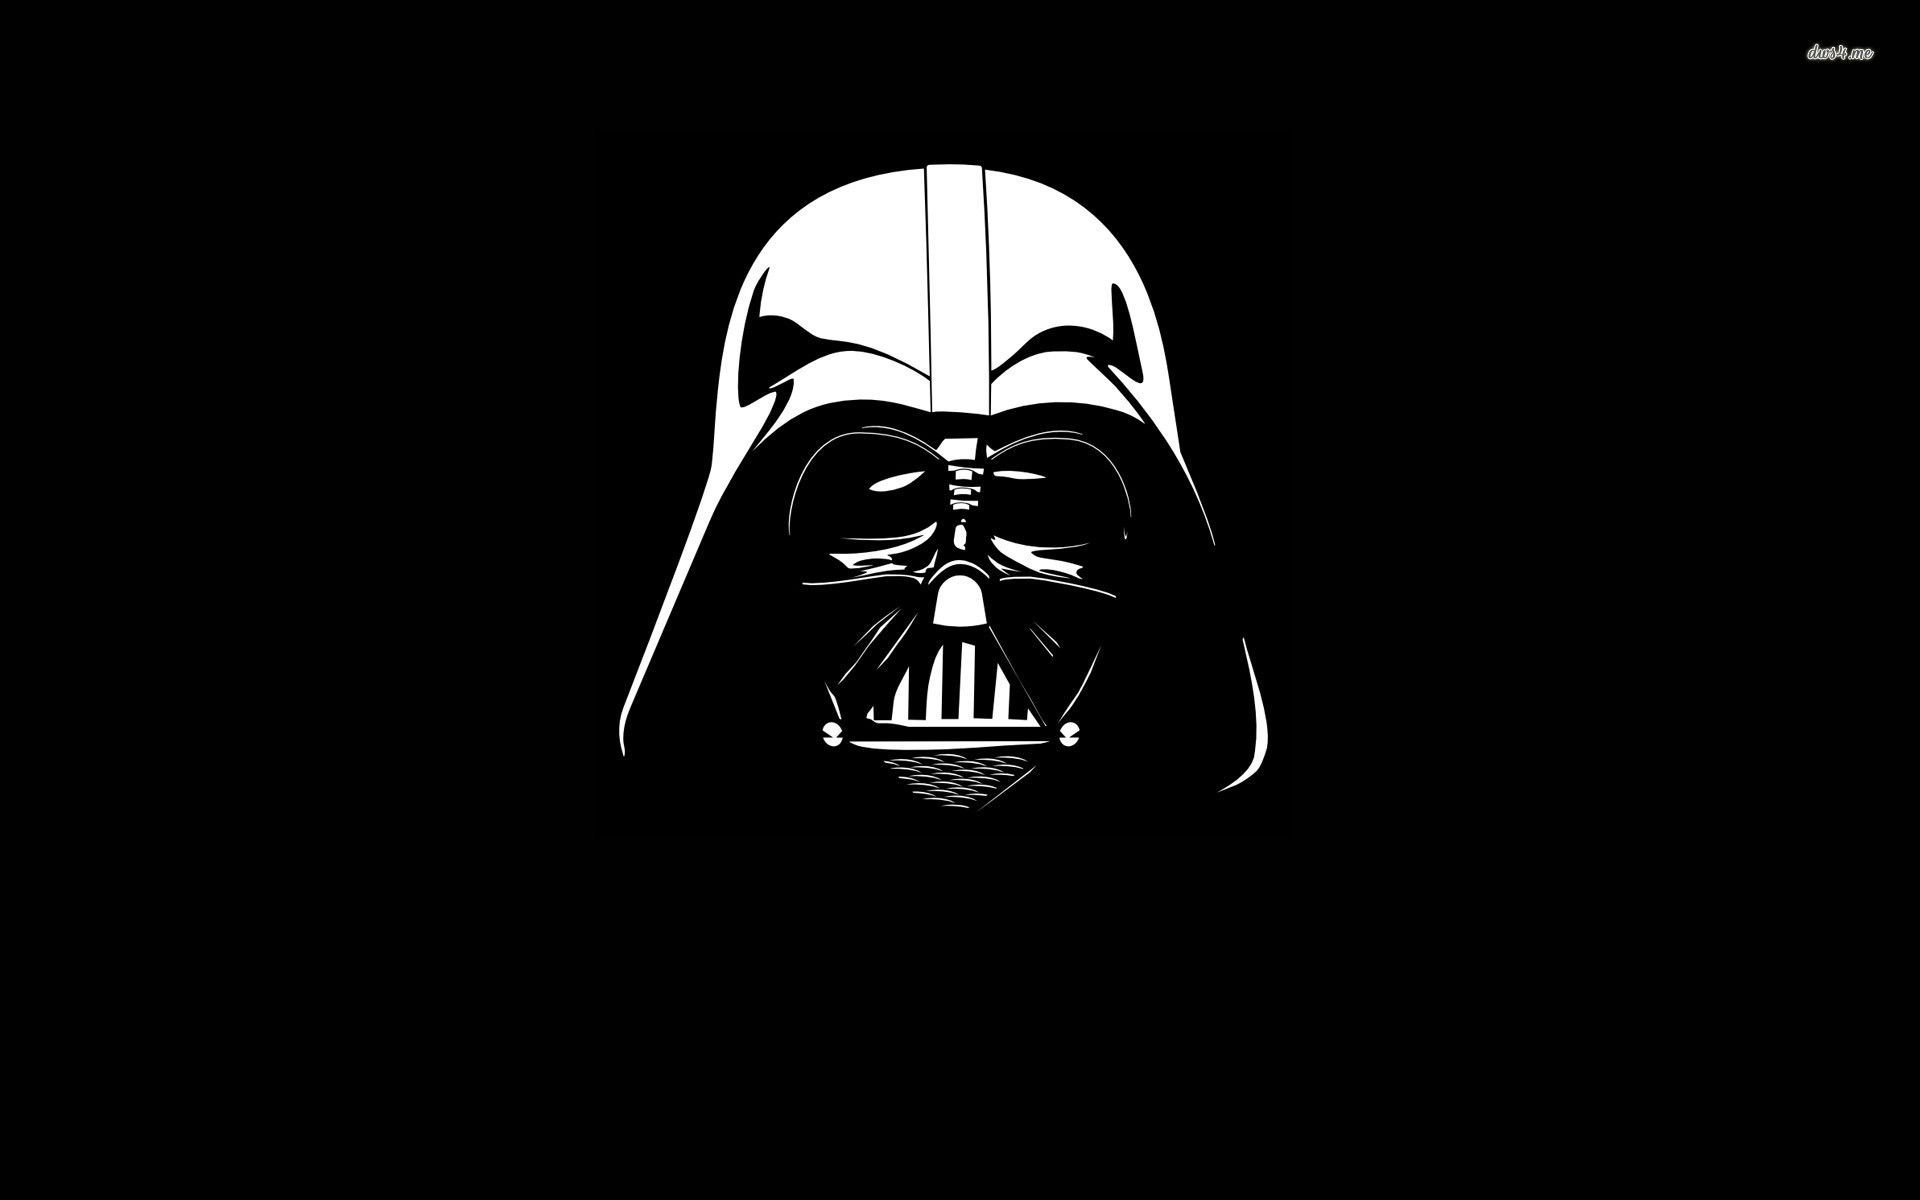 Darth Vader wallpaper - Movie wallpapers -